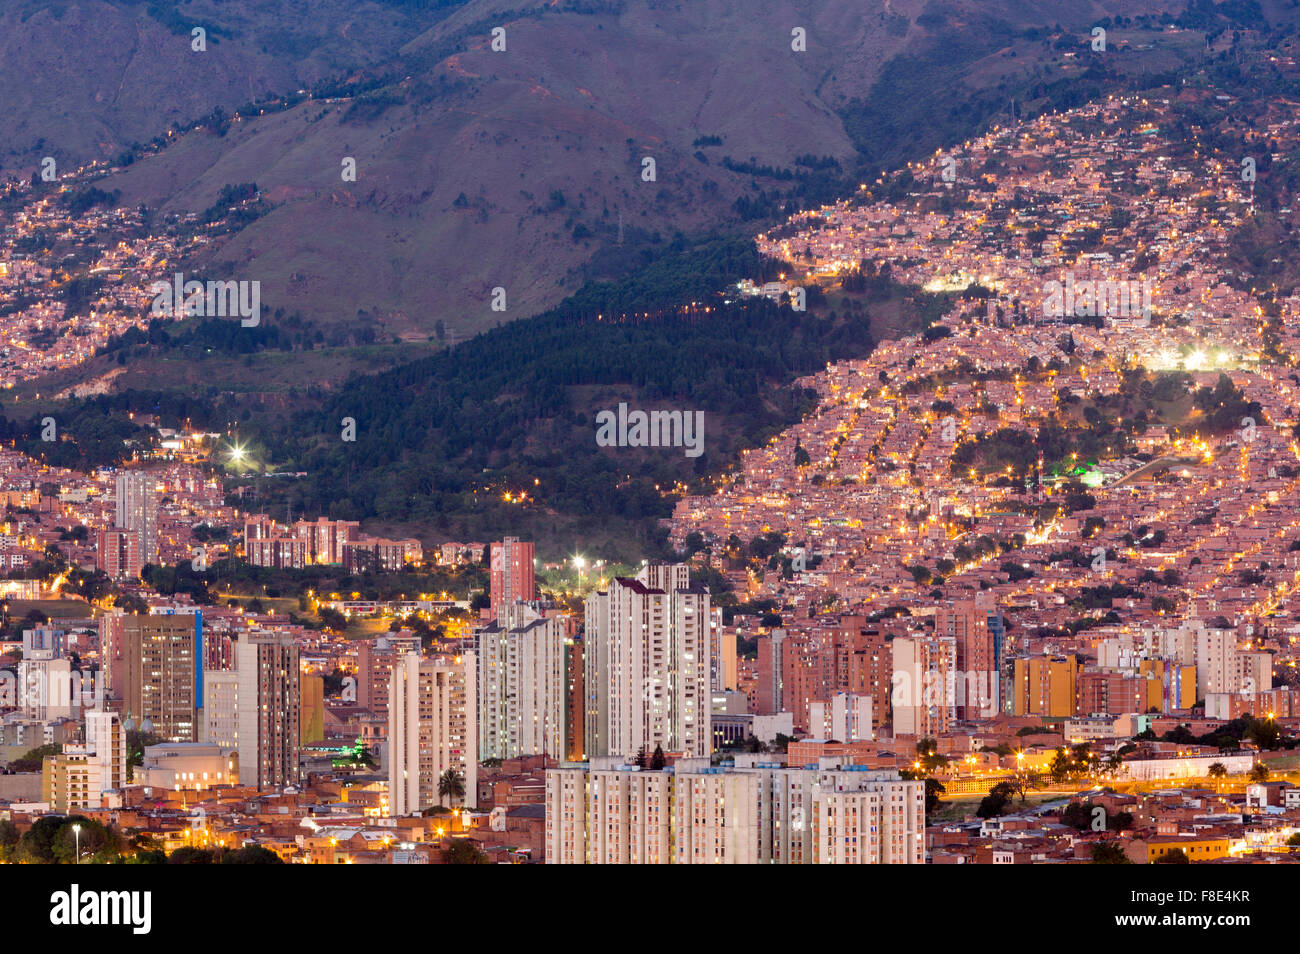 Rues de la région de Medellin, Colombie, la nuit Banque D'Images